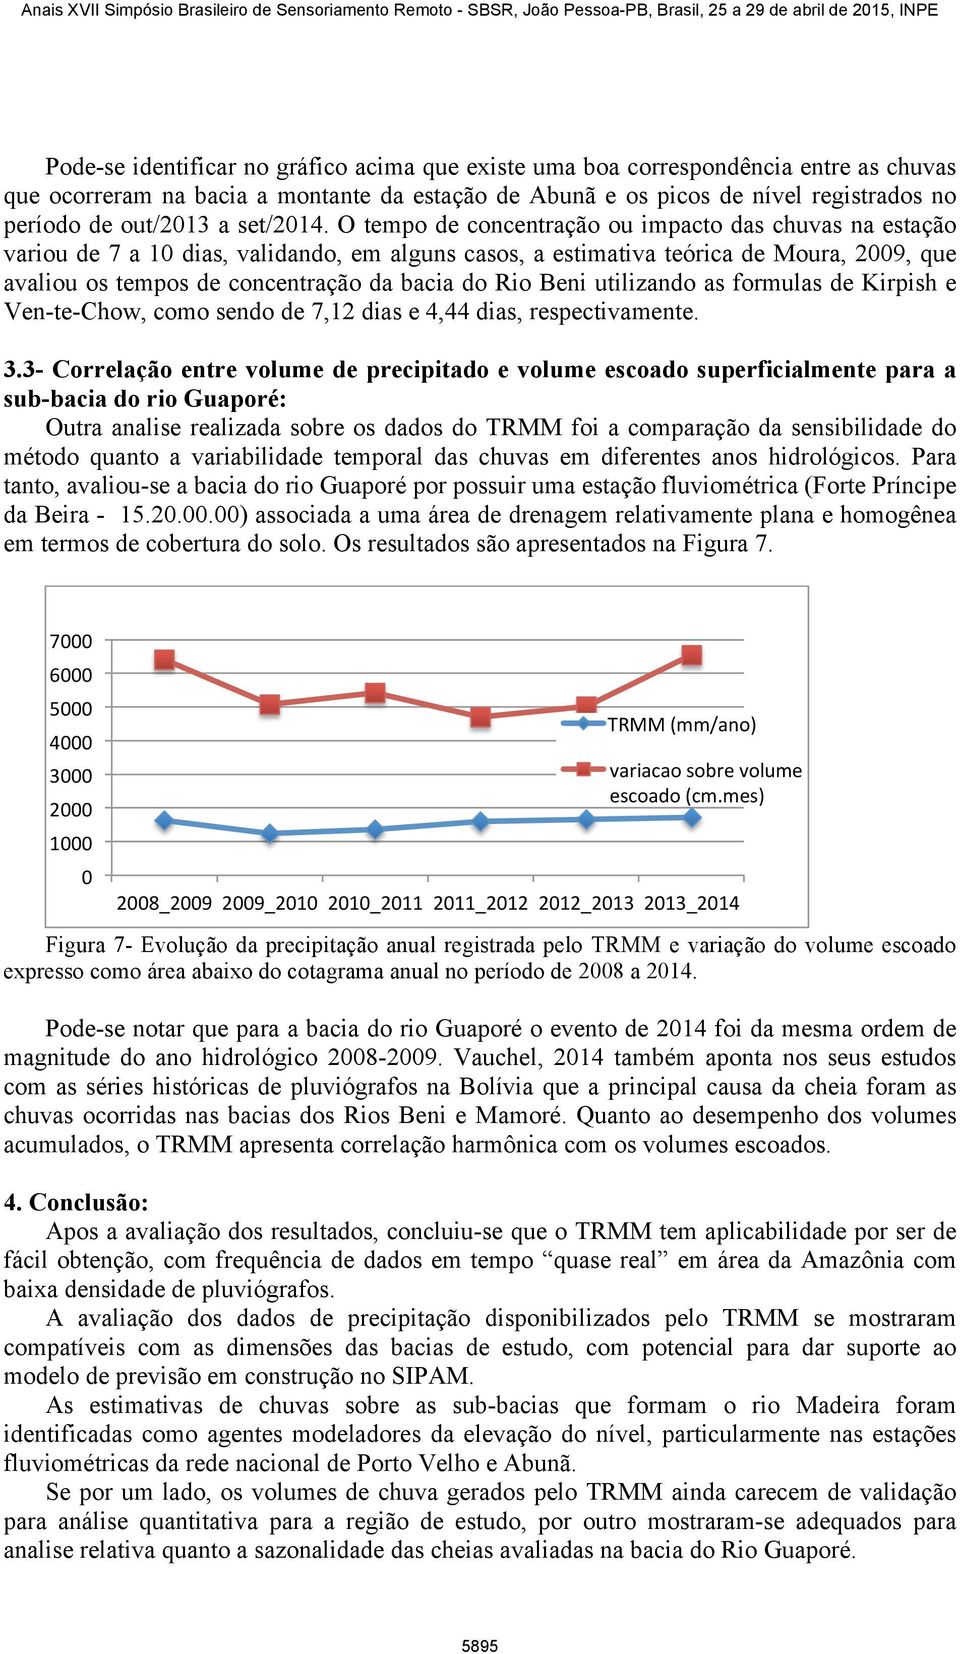 O tempo de concentração ou impacto das chuvas na estação variou de 7 a 10 dias, validando, em alguns casos, a estimativa teórica de Moura, 2009, que avaliou os tempos de concentração da bacia do Rio